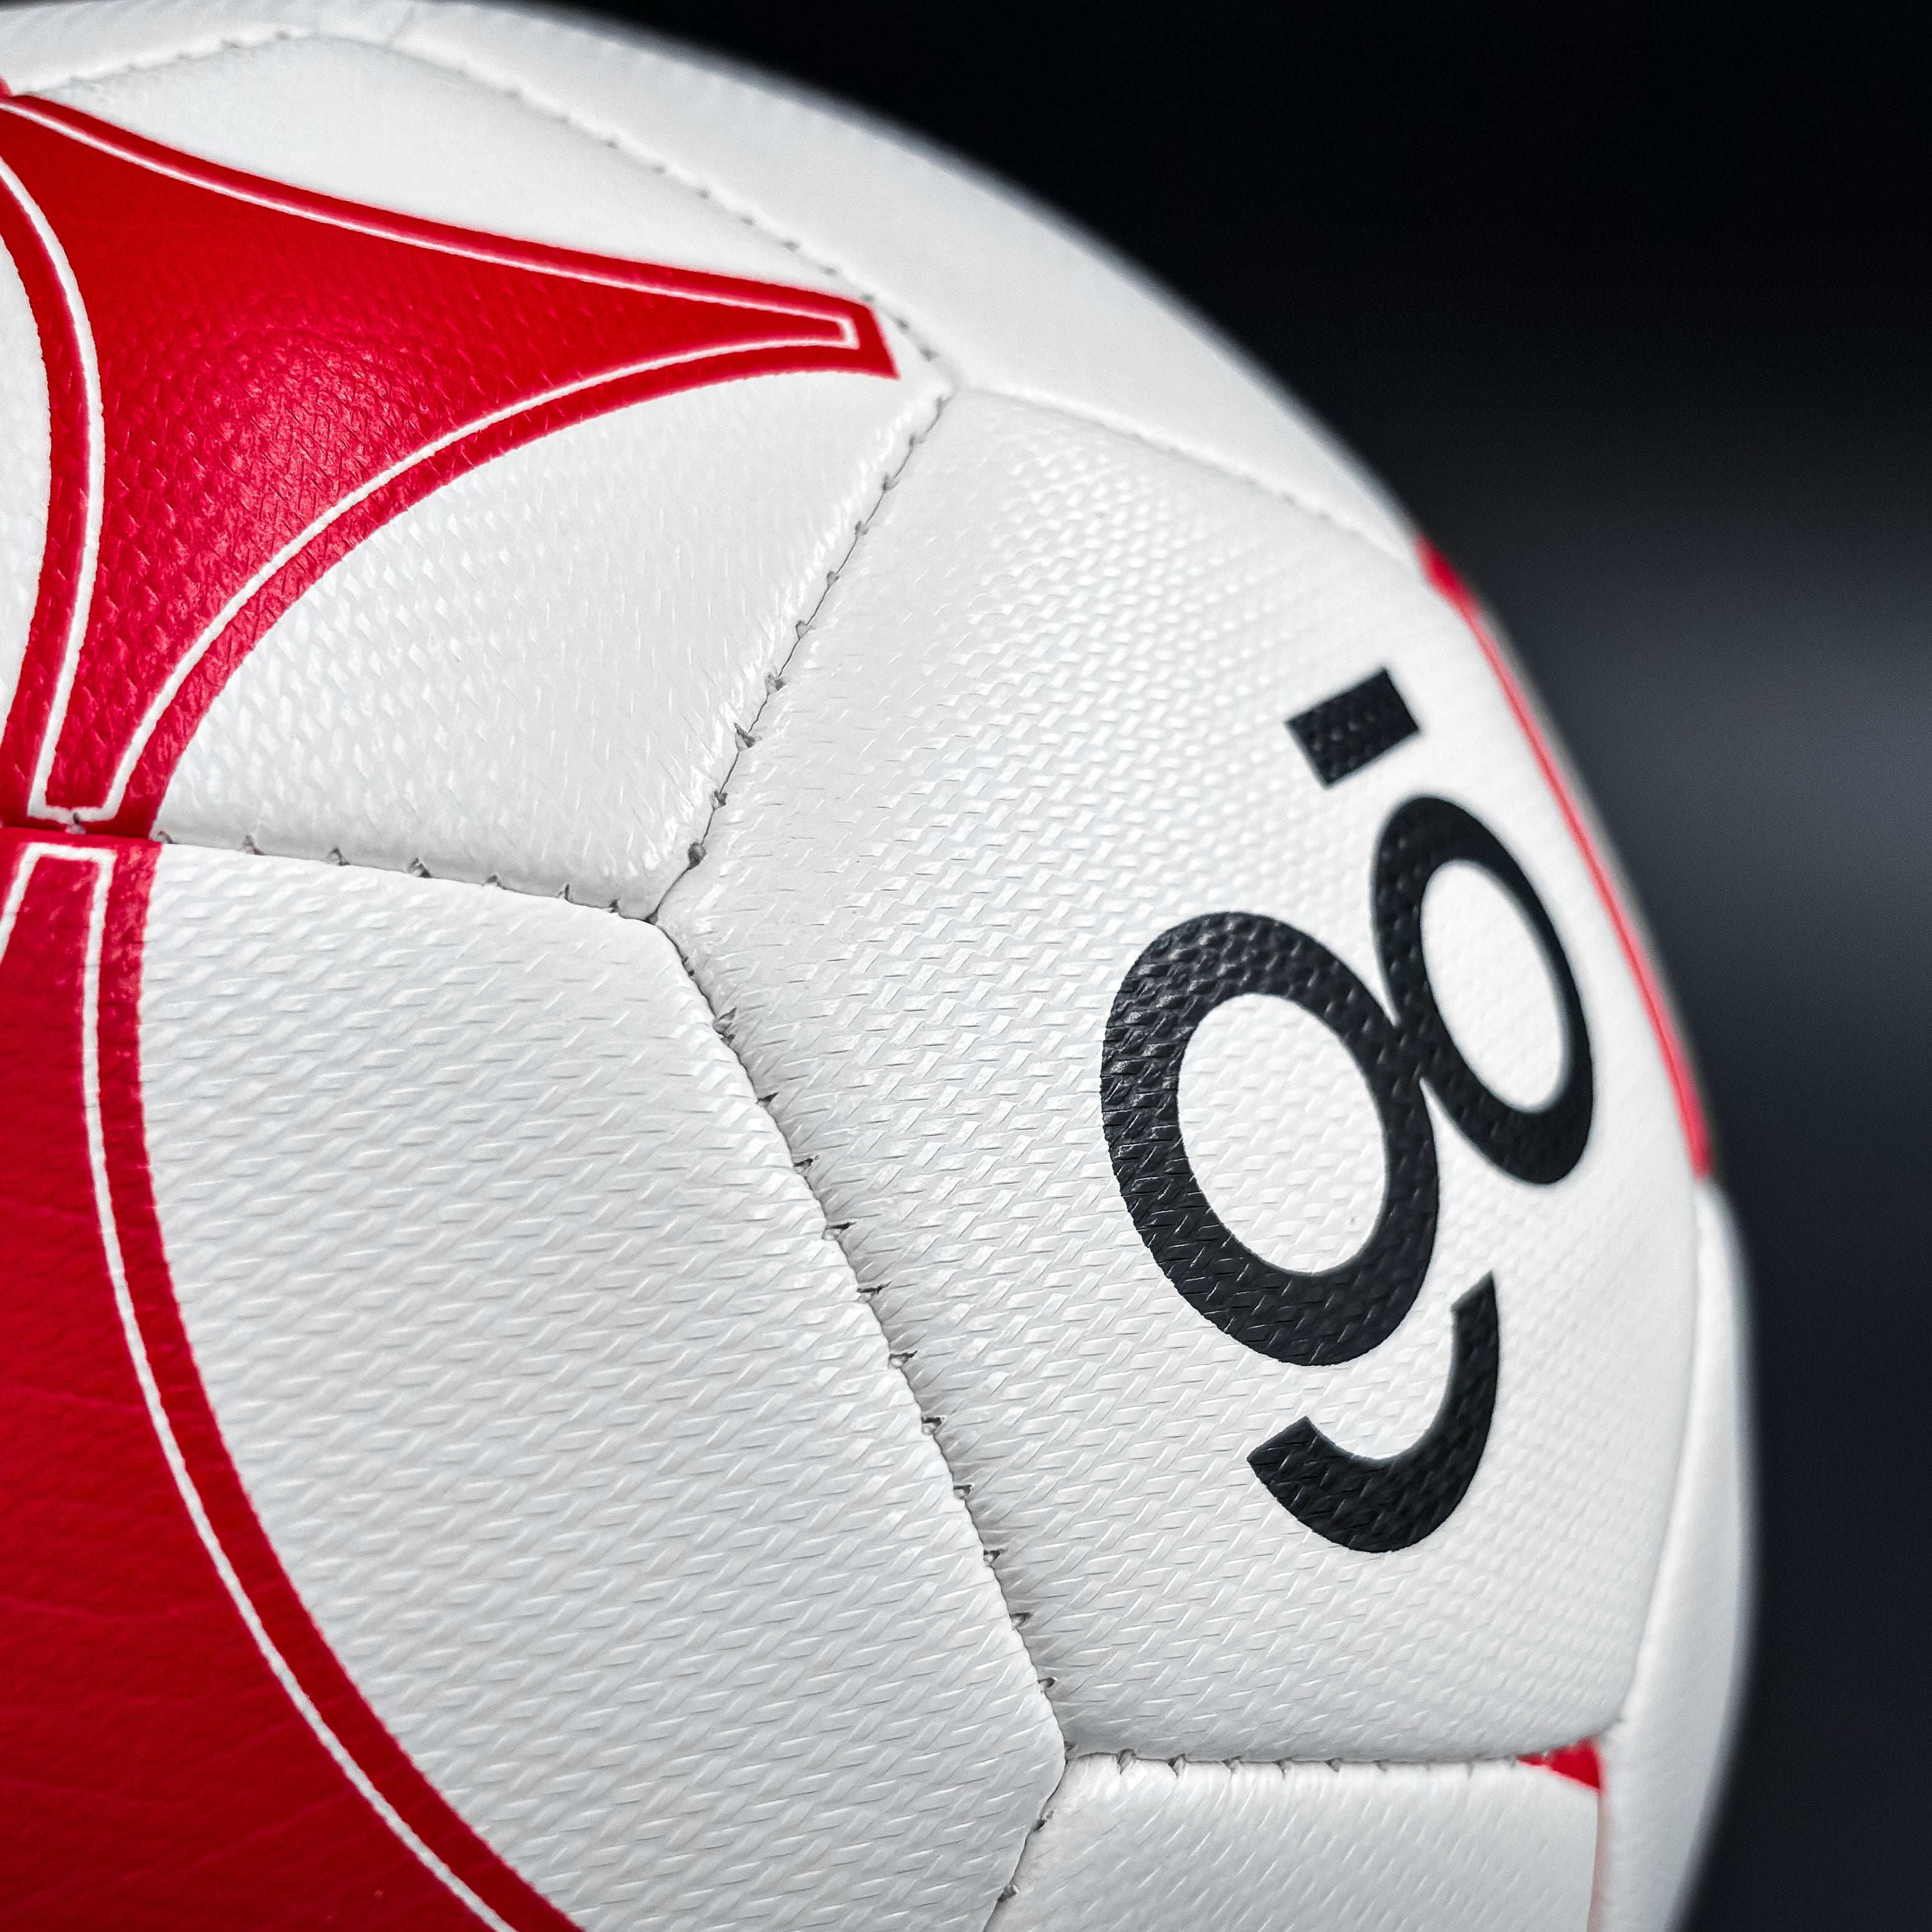 Colligo Hand-stitched Soccer Ball - Colligo